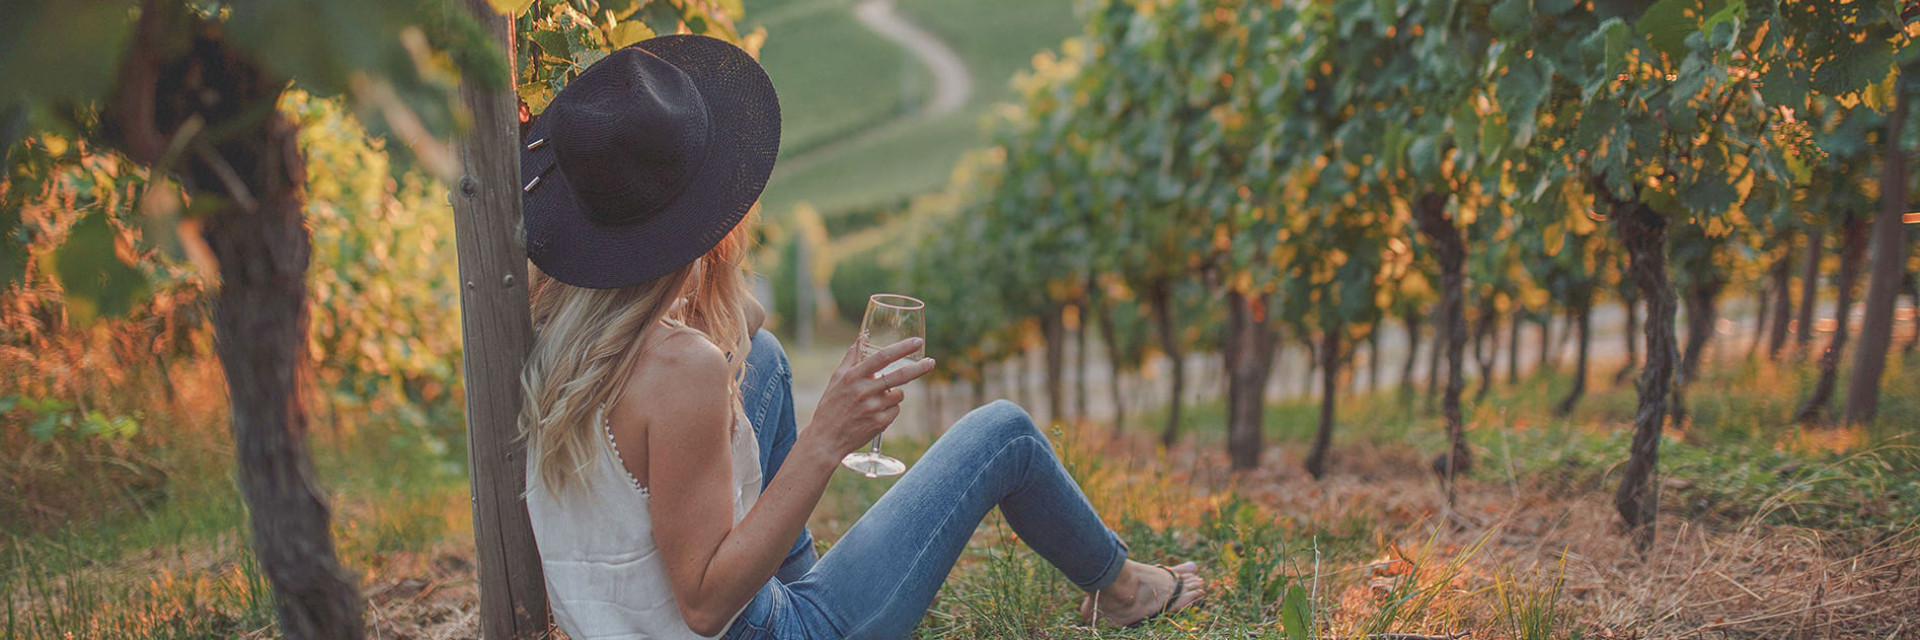 Foto einer Frau, die bei Sonnenuntergang über den Weinreben ein Glas Weißwein genießt.